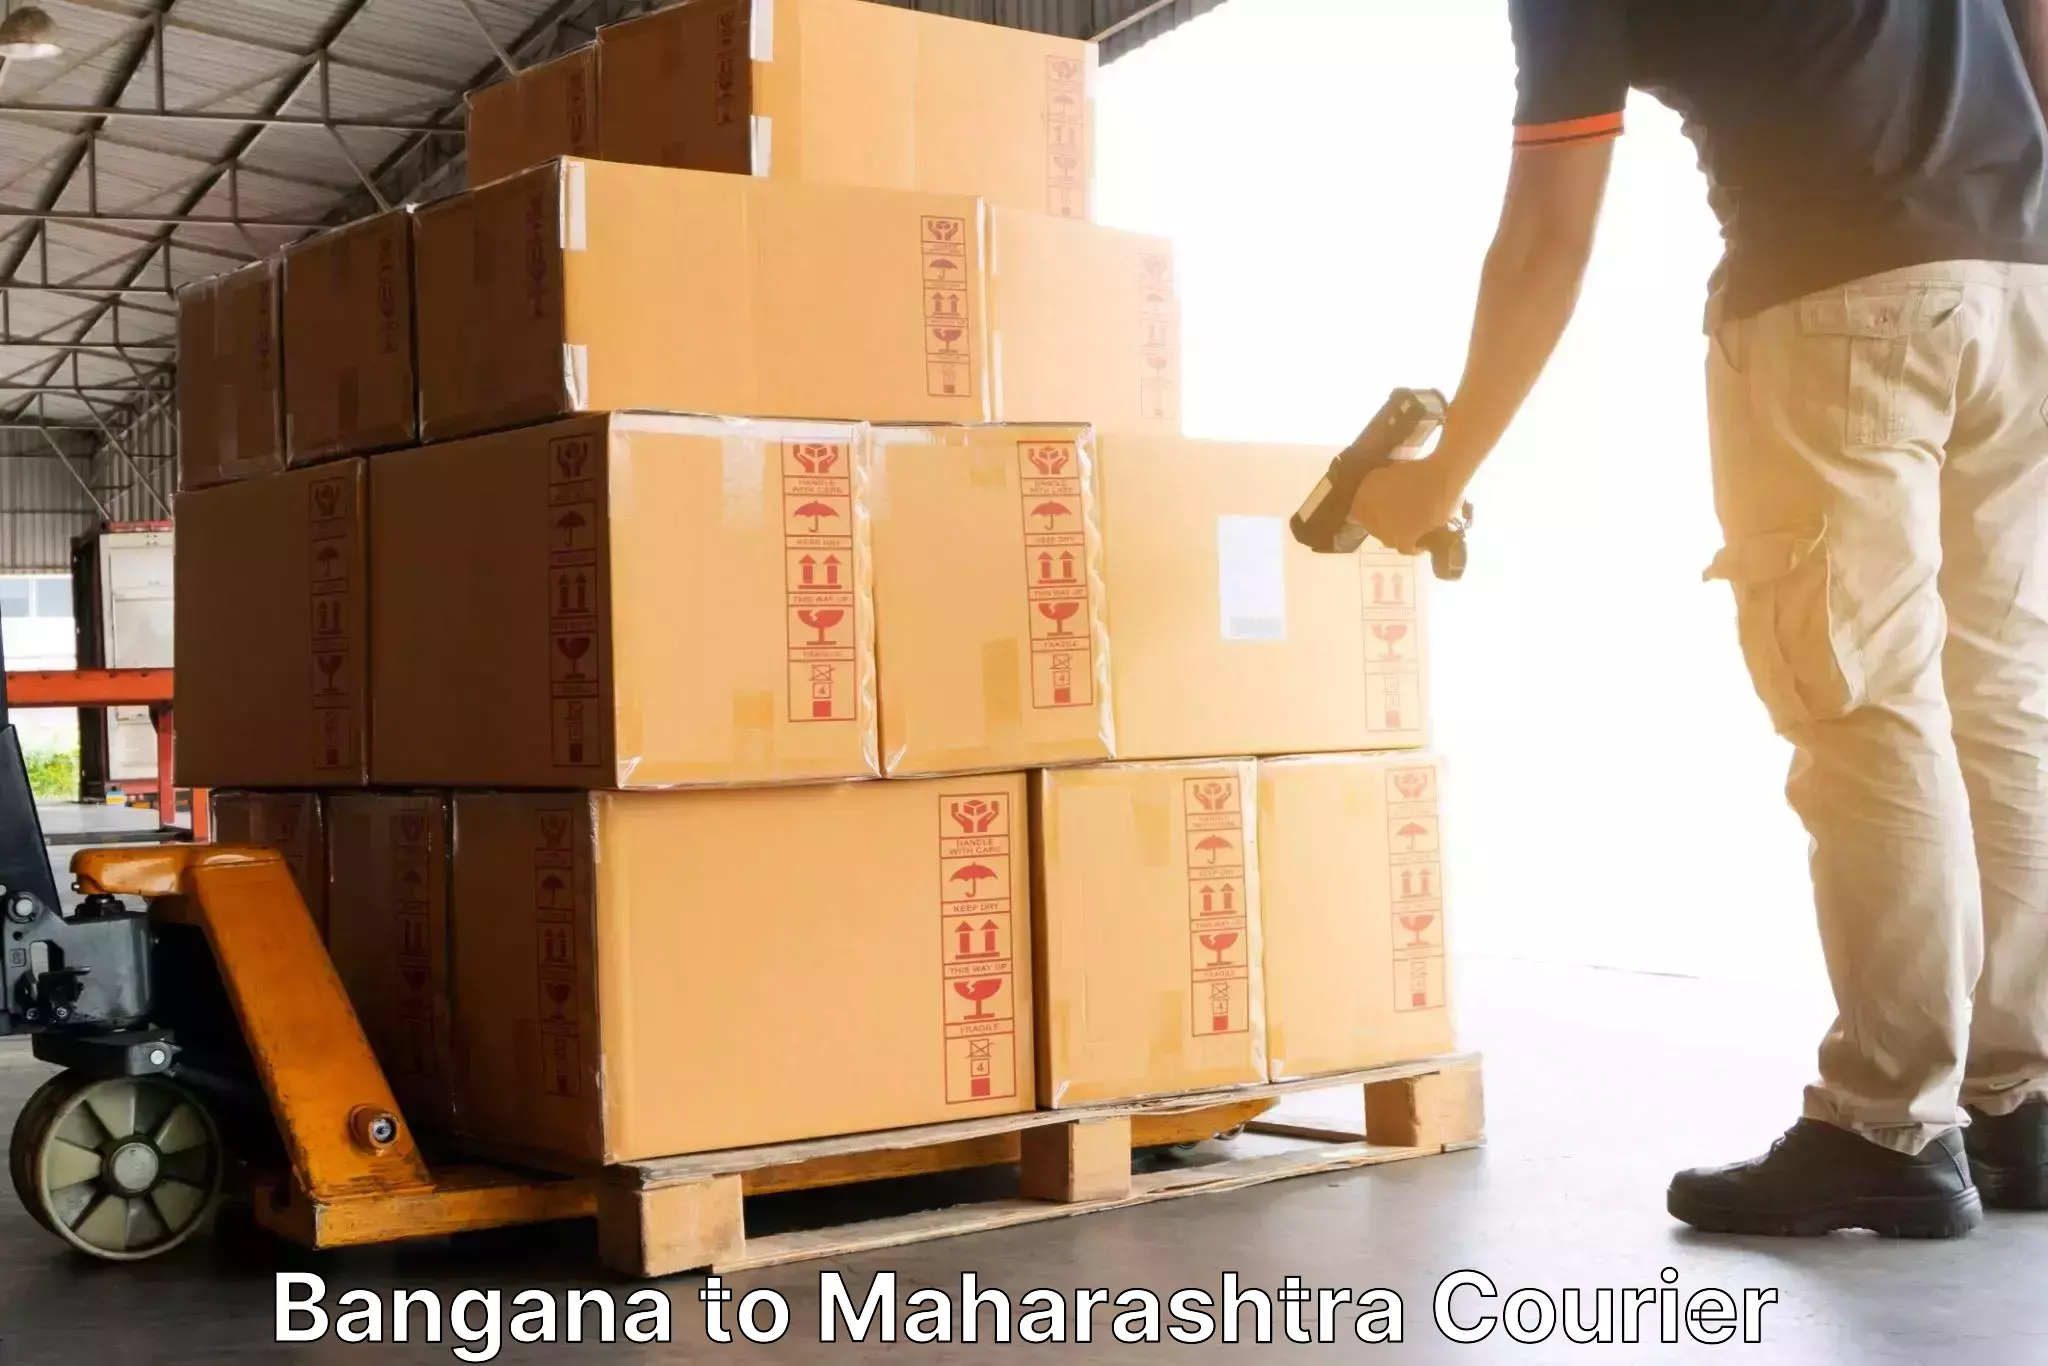 Efficient freight service in Bangana to Walchandnagar